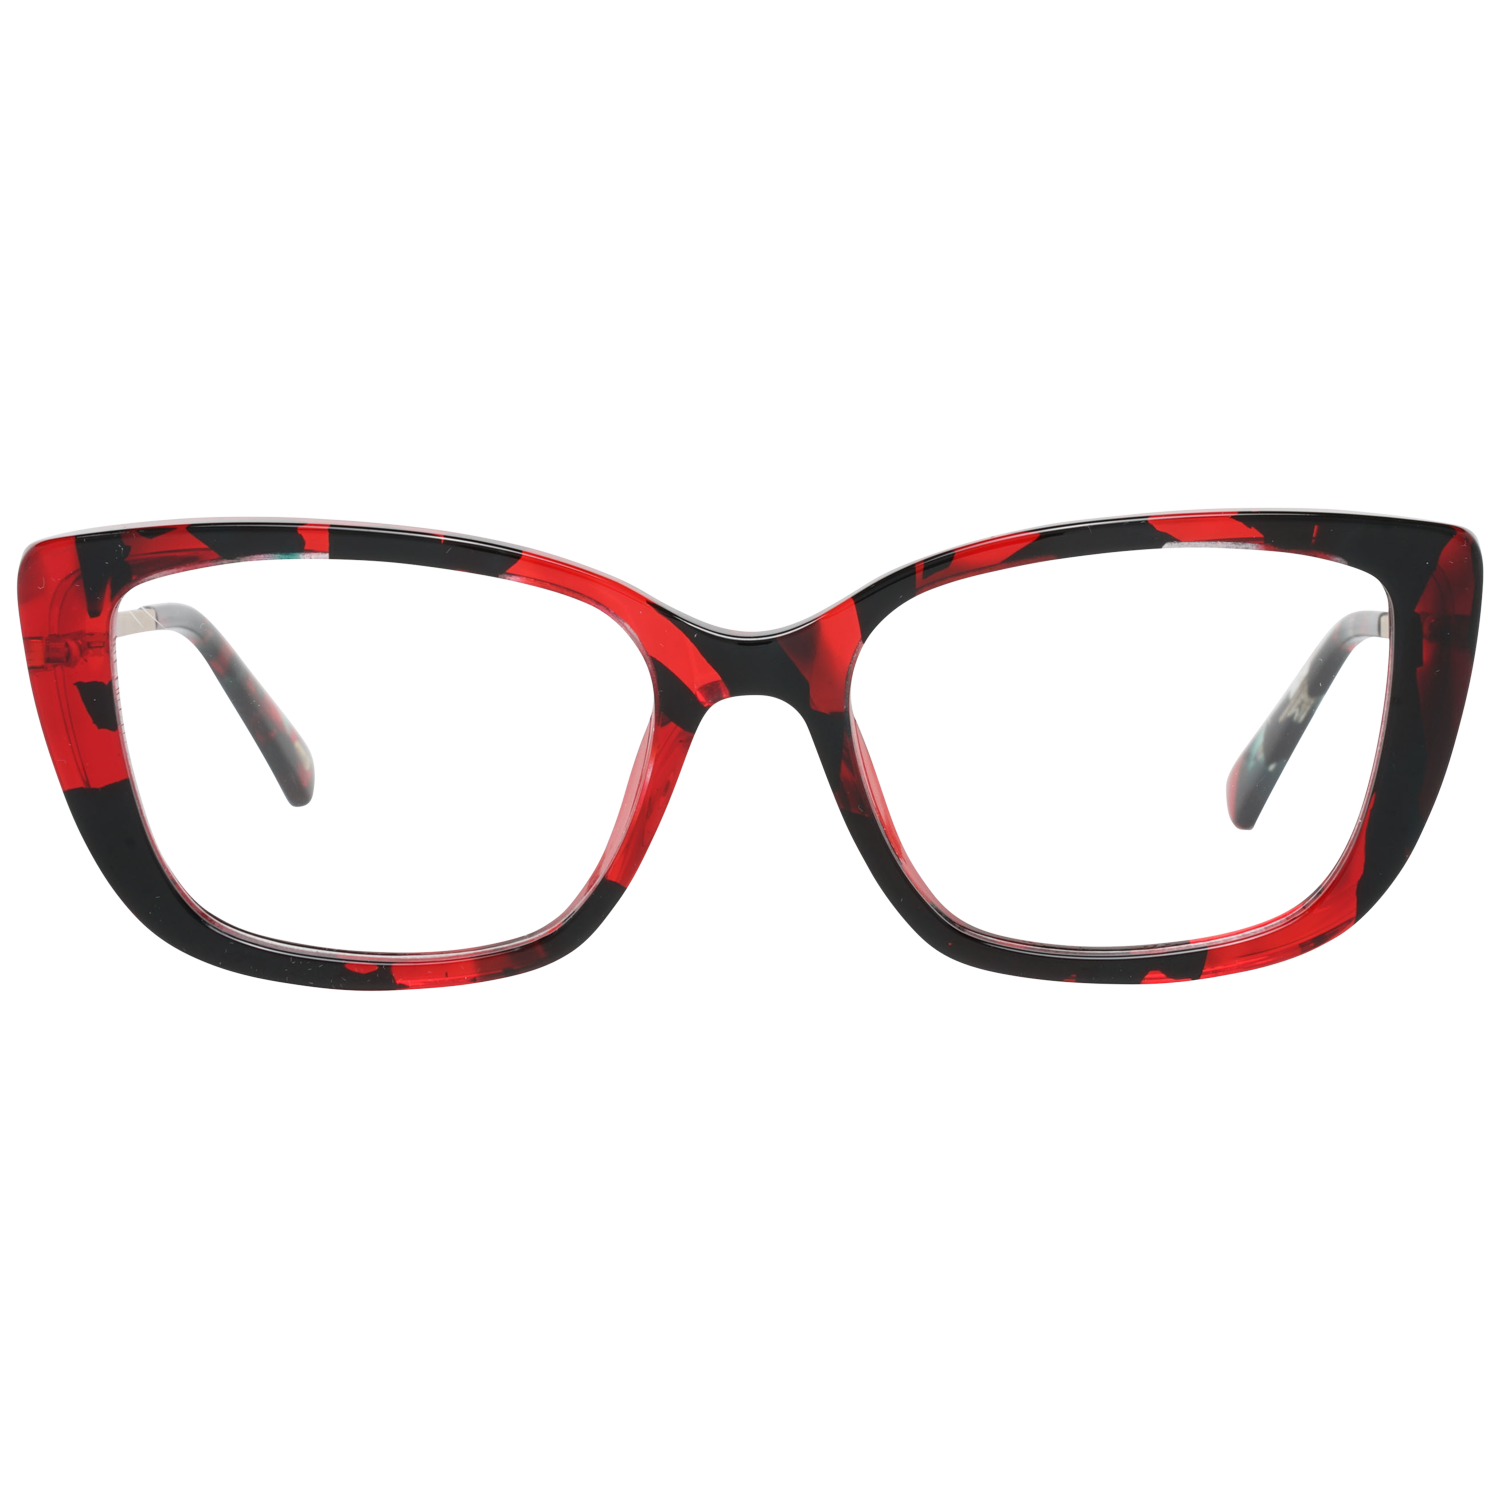 Web Frames Web Glasses Optical Frame WE5289 055 52 Eyeglasses Eyewear UK USA Australia 